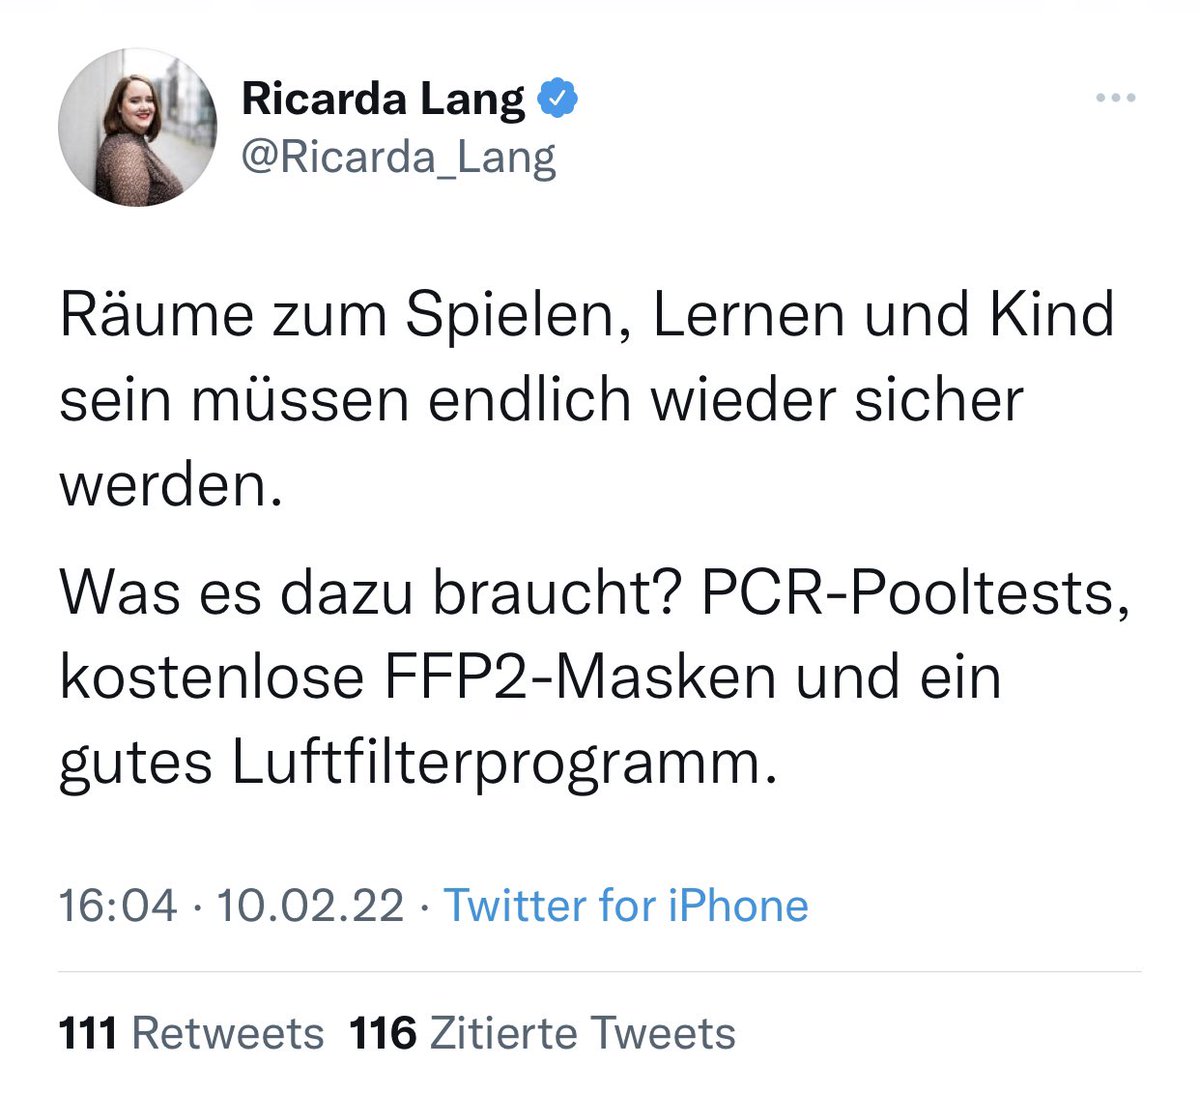 FFP2-Masken für Kinder. Verrückt! Die geballte Ahnungslosigkeit von @Ricarda_Lang, Die Grünen, in einem Tweet. Deutschland ist mit solchen Politikern verloren. Bin gespannt, wie Anhänger und Parteimitglieder diese erneute Unsinnigkeit verteidigen werden.